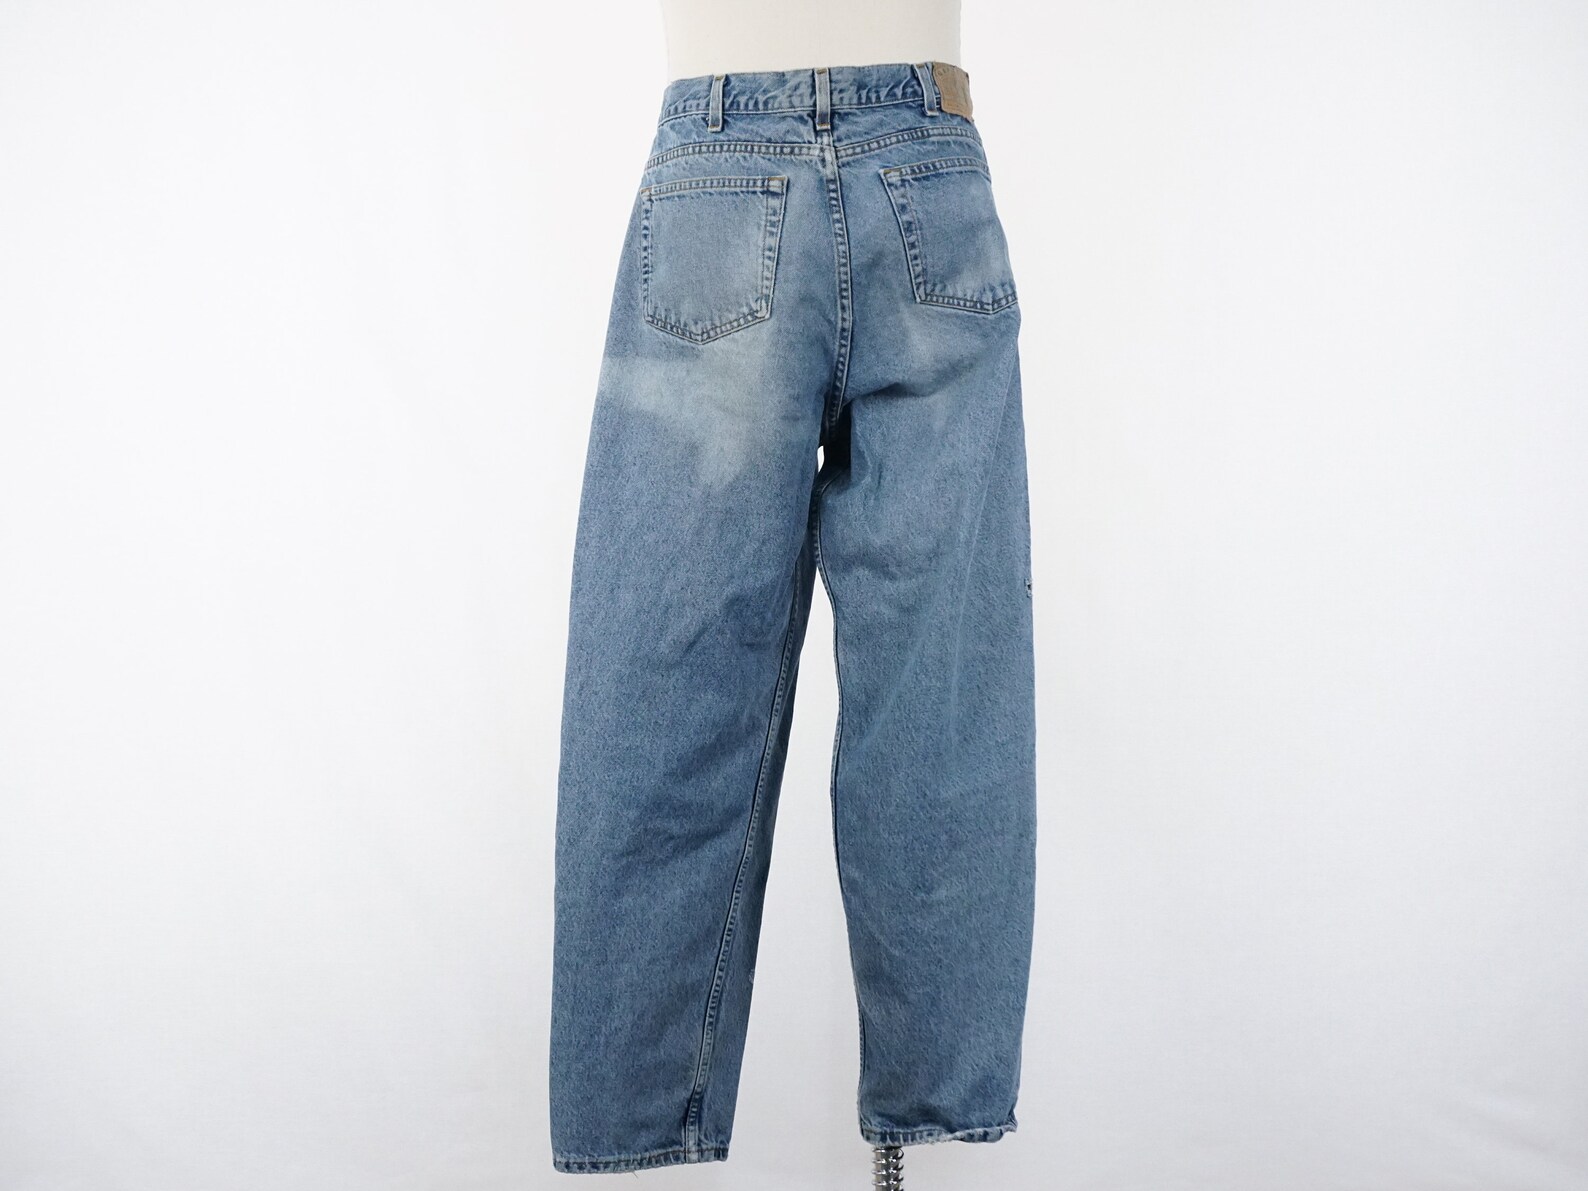 Vintage Men's Baggy Fit Light Medium Wash Denim Jeans | Etsy